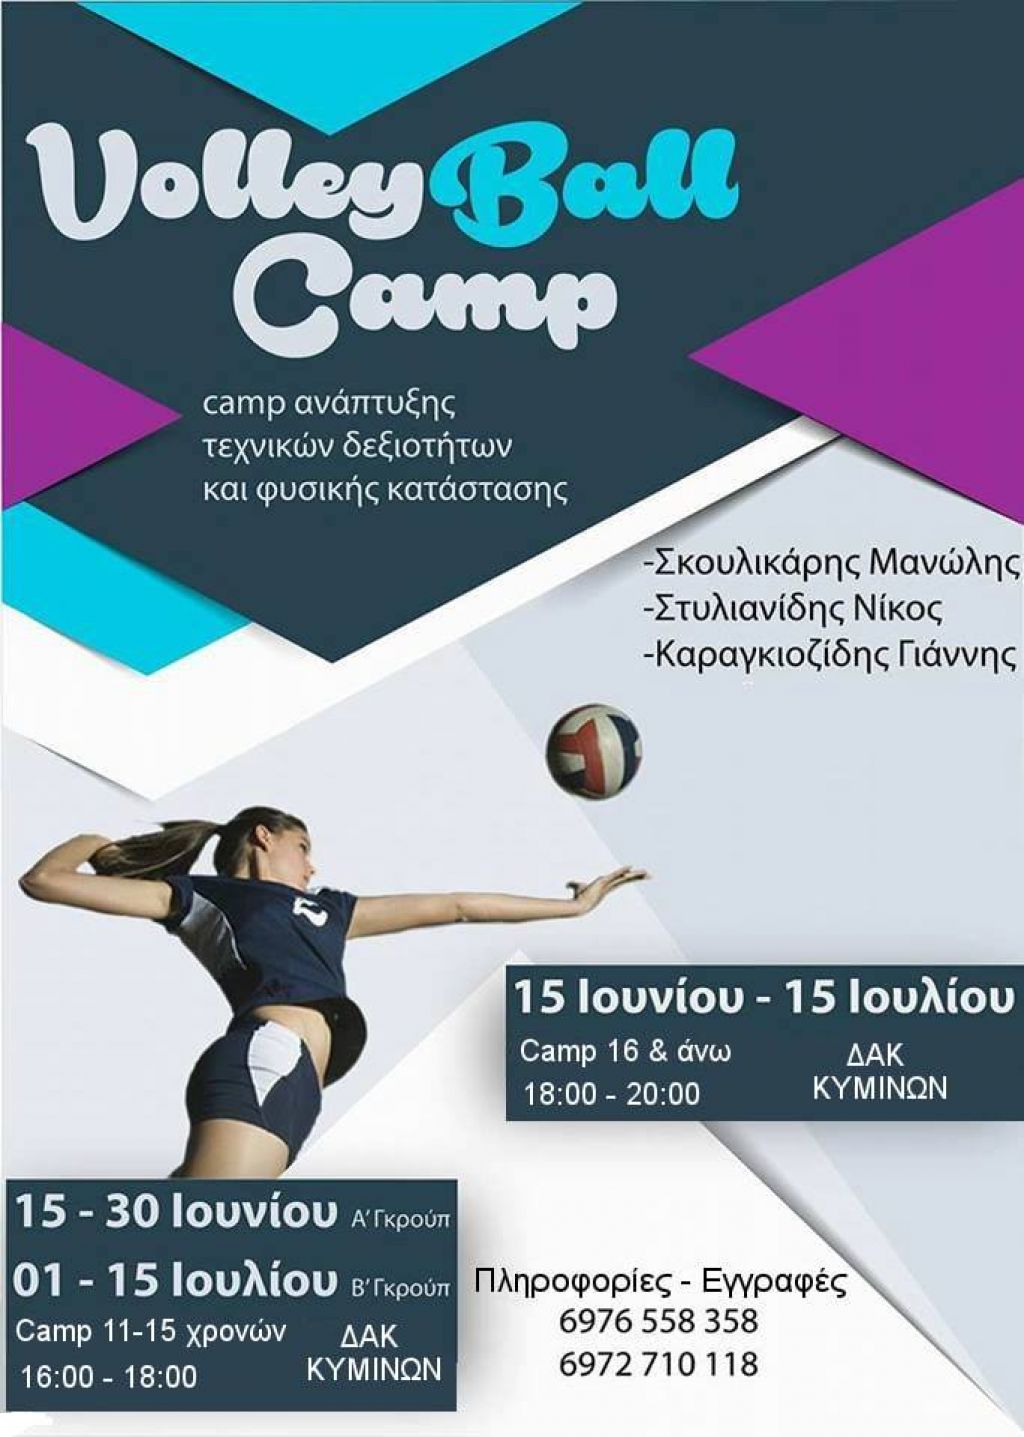 VolleyBall  Camp στο ΔΑΚ Κυμίνων